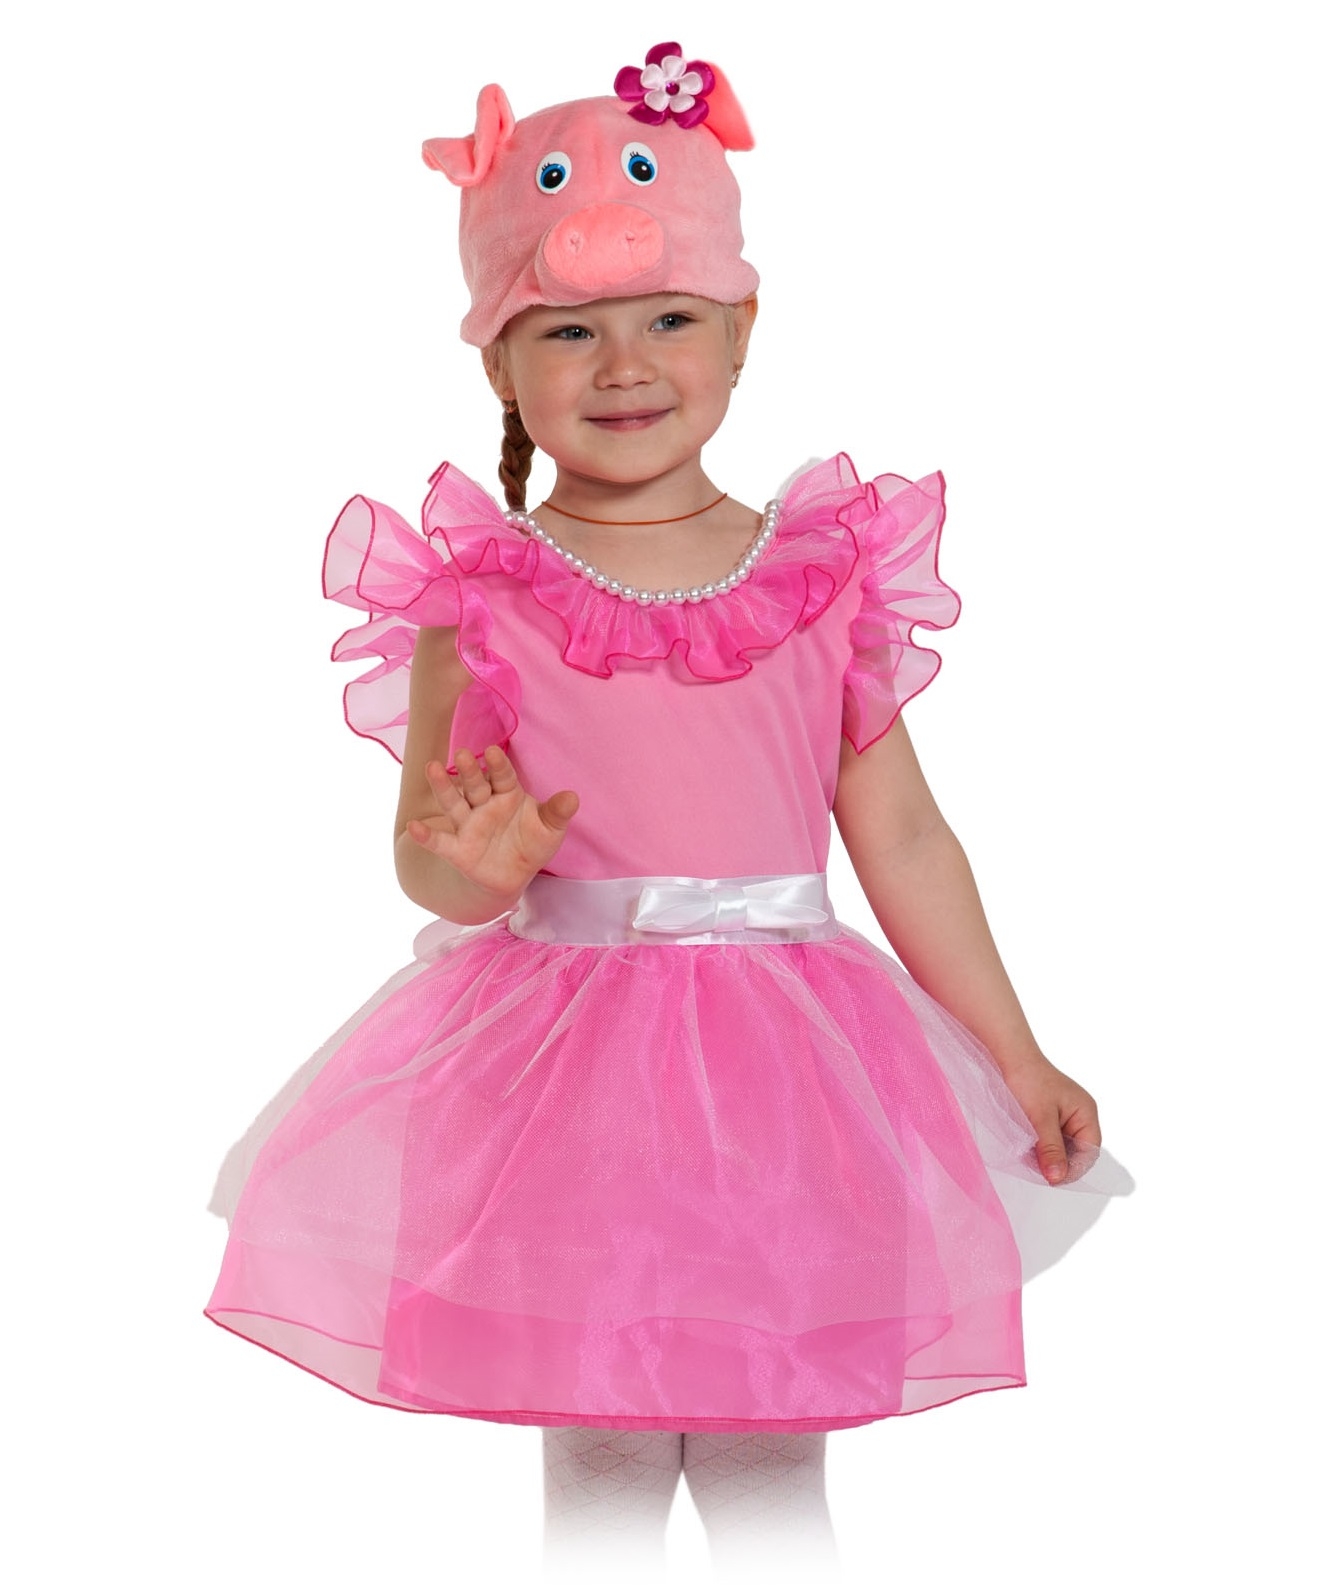 Как сделать костюм свинки пеппы для себя и ребенка